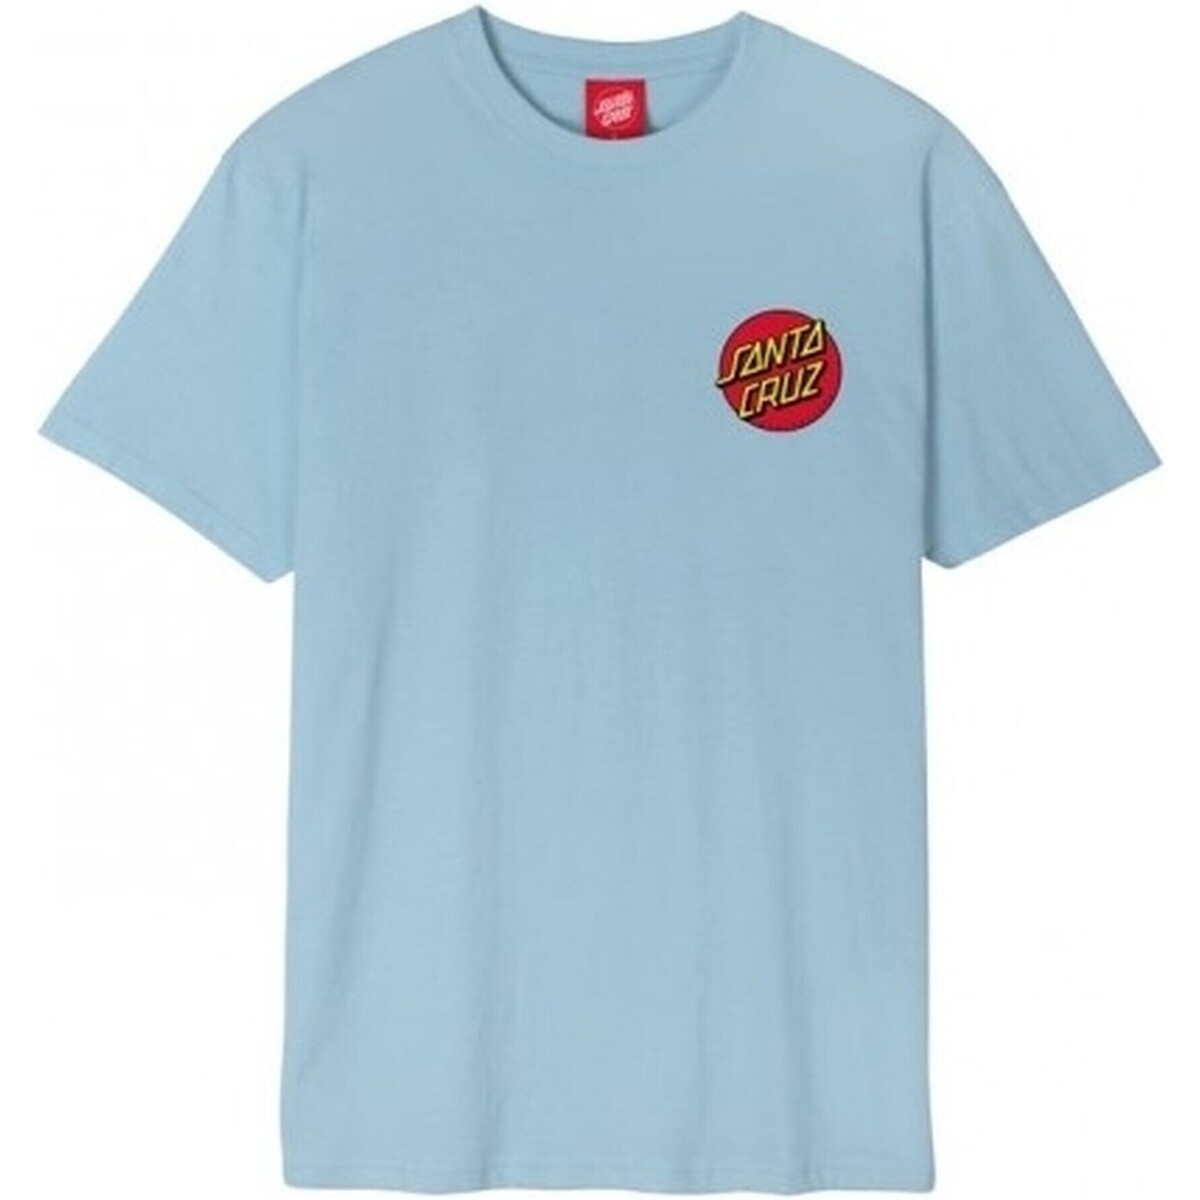 tekstylia Męskie T-shirty z krótkim rękawem Santa Cruz  Niebieski